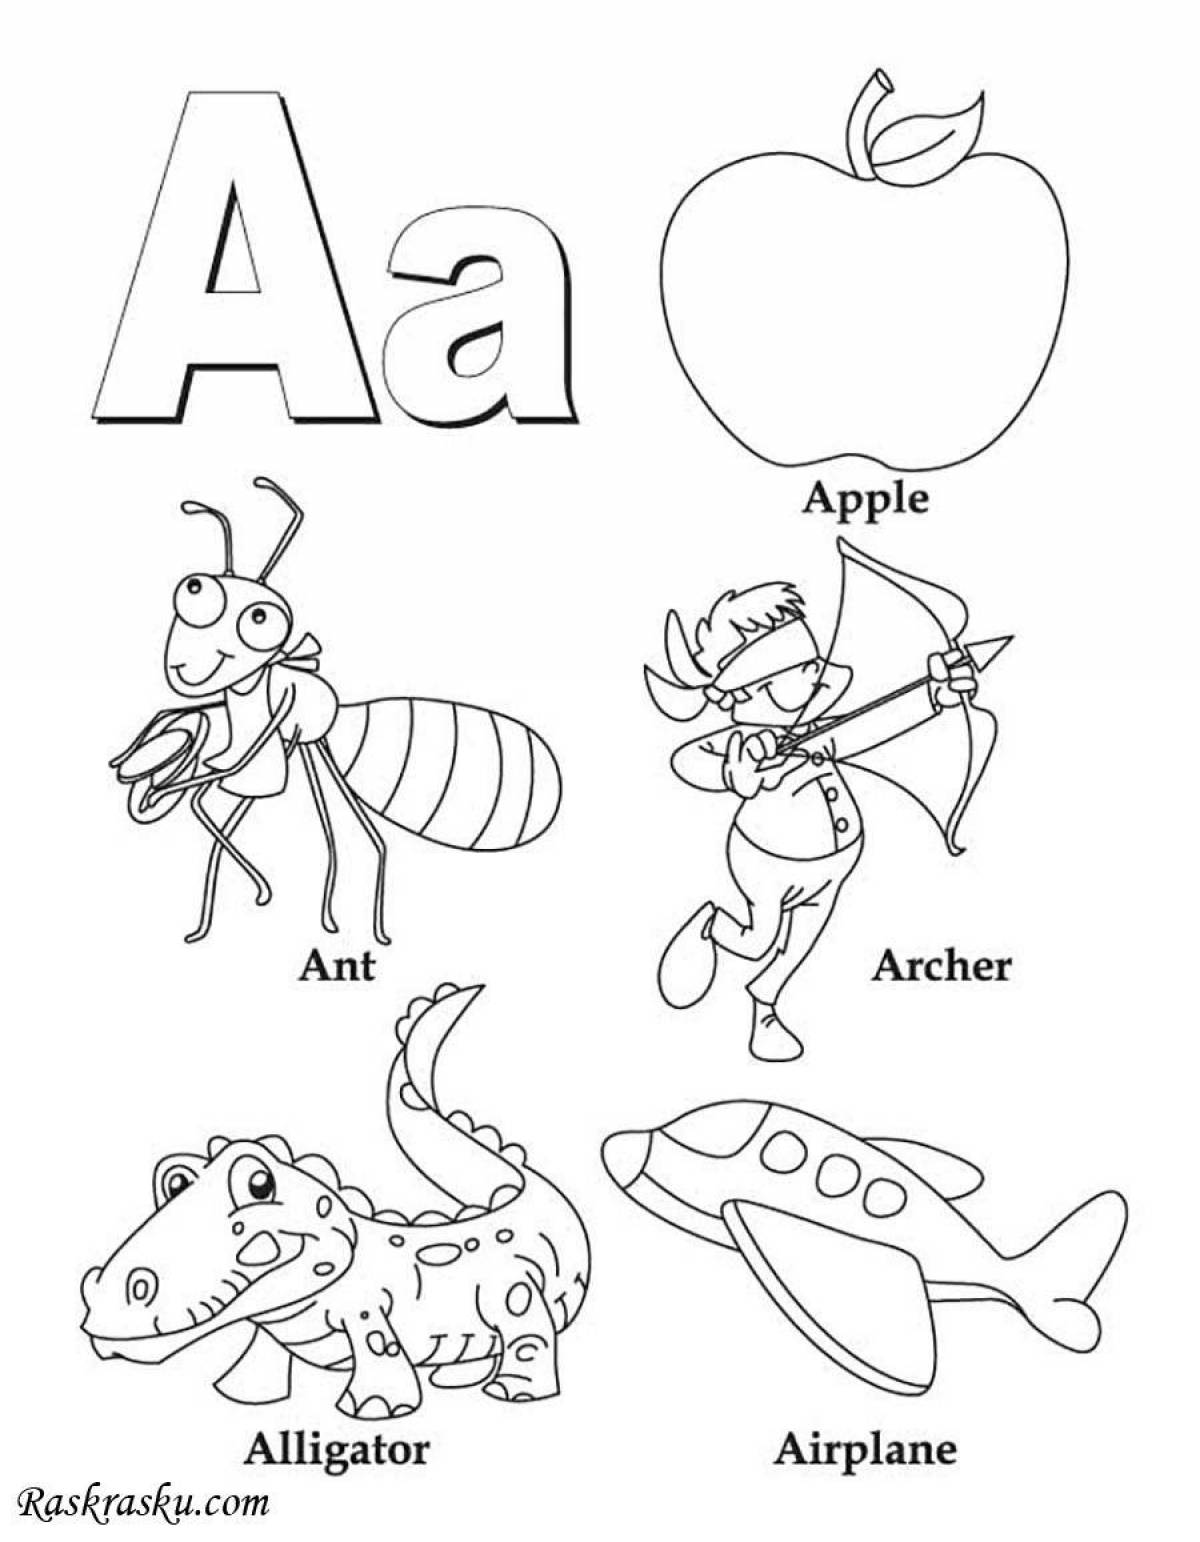 Раскраски Буквы и алфавит распечатать на А4